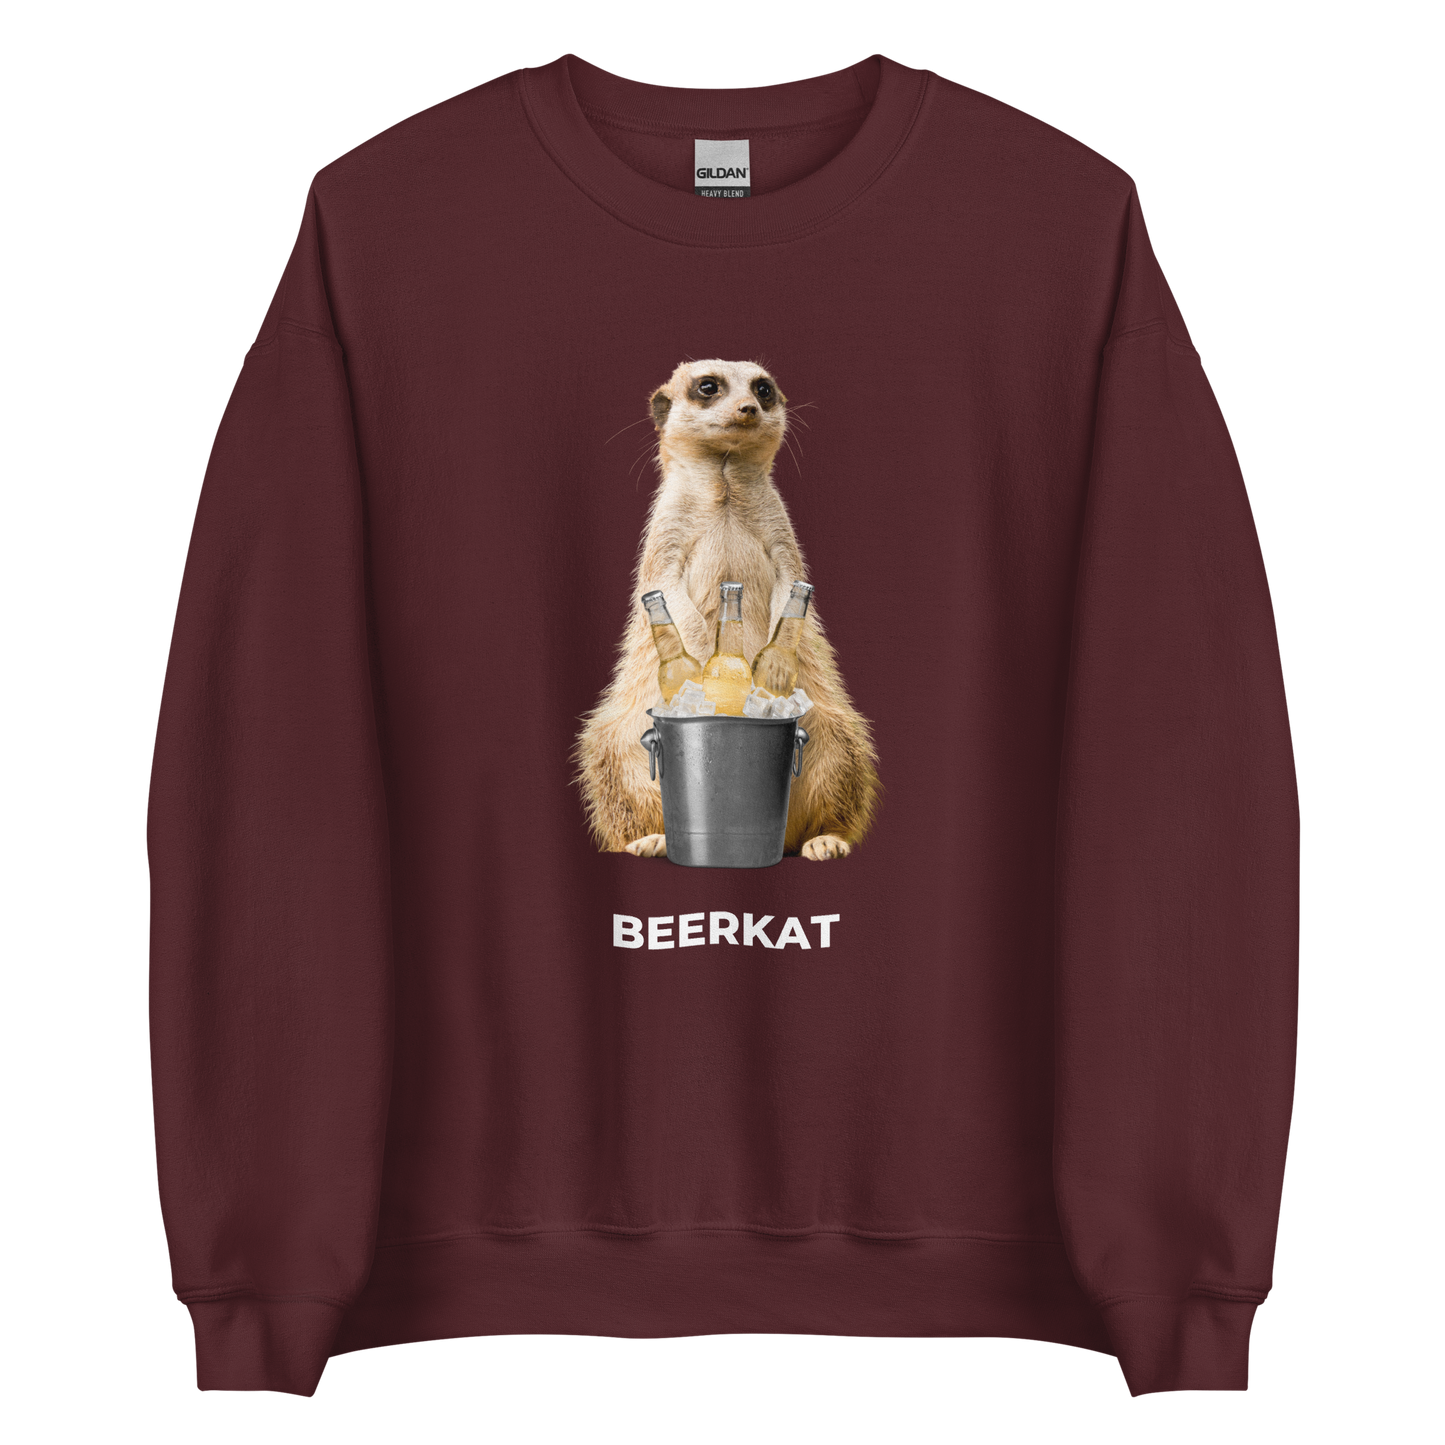 Maroon Meerkat Sweatshirt featuring a hilarious Beerkat graphic on the chest - Funny Graphic Meerkat Sweatshirts - Boozy Fox